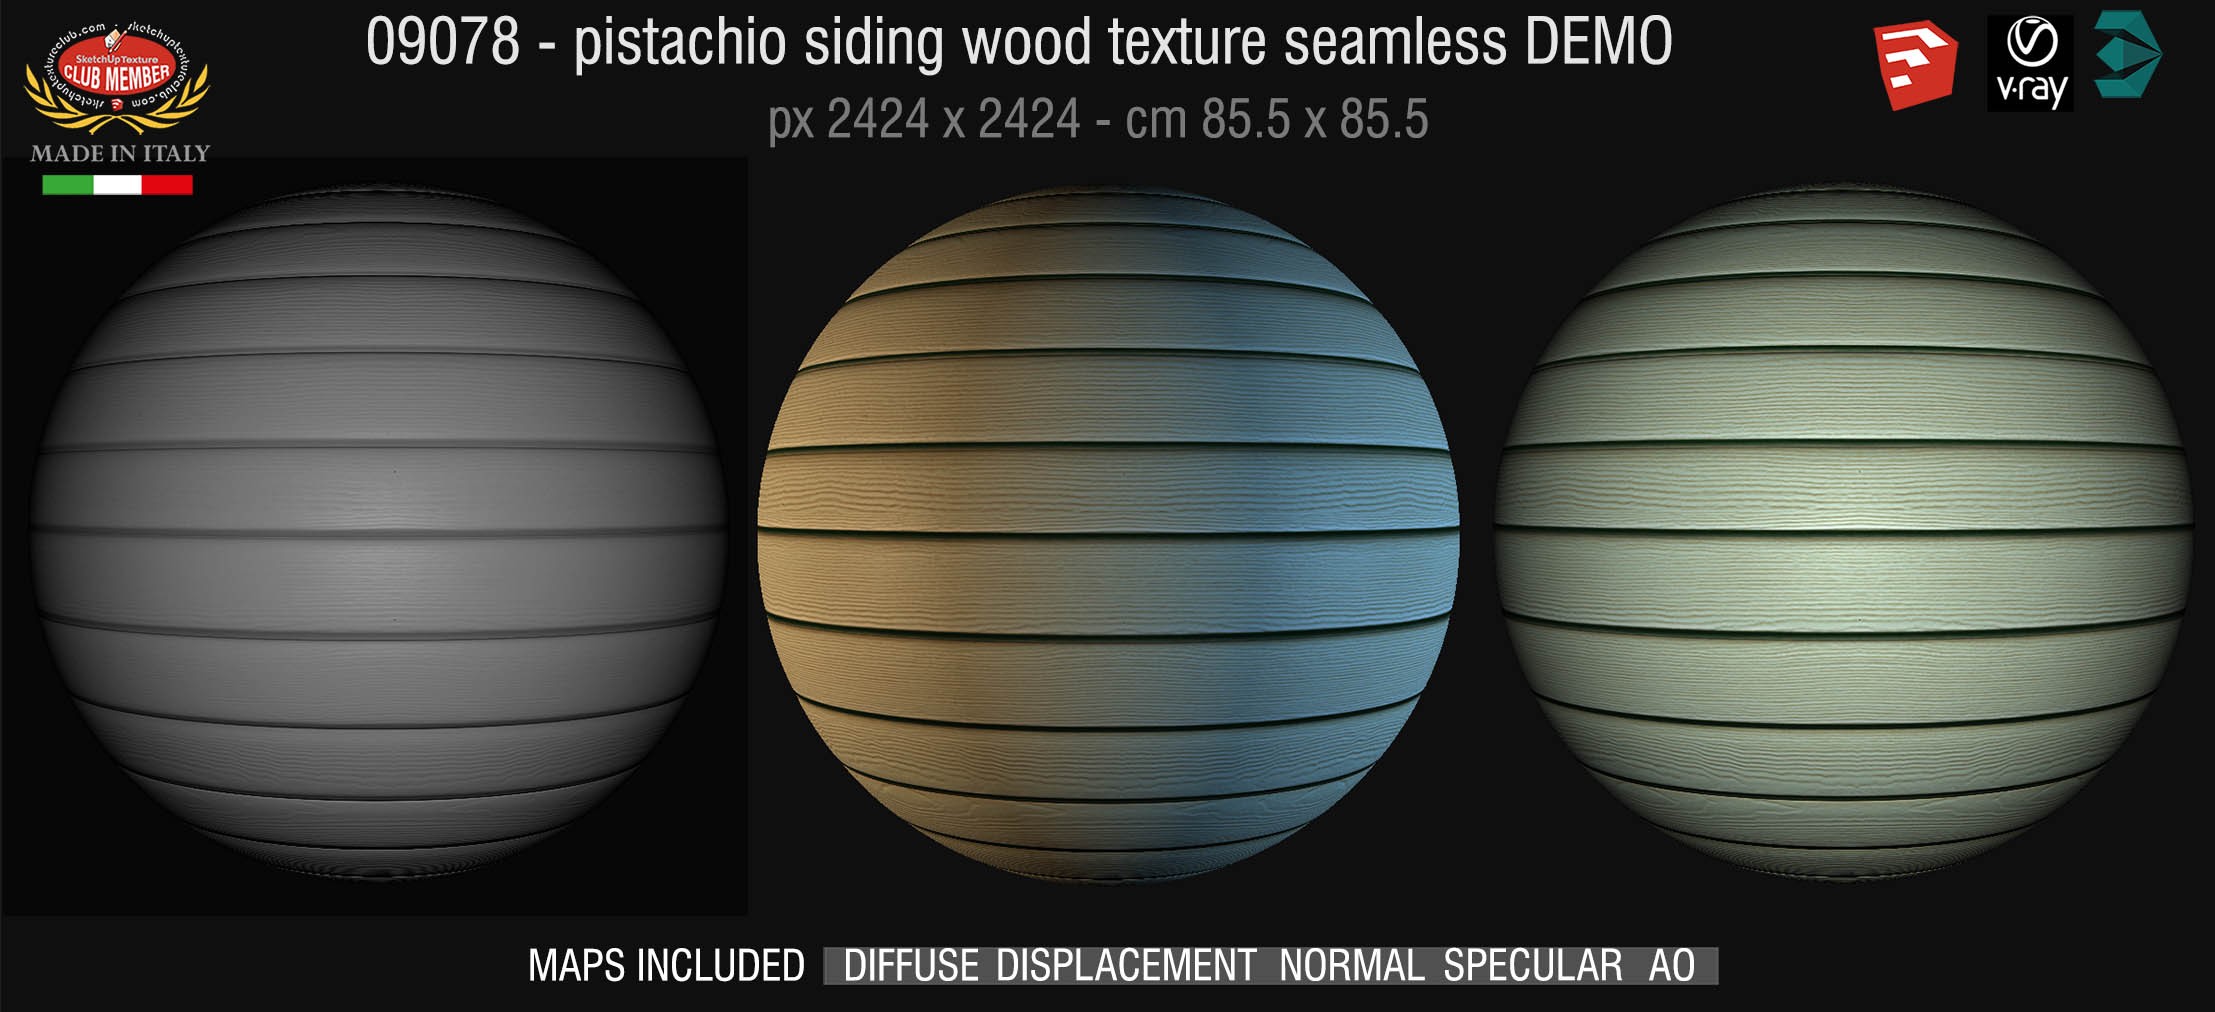 09078 HR Pistachio siding wood texture + maps DEMO